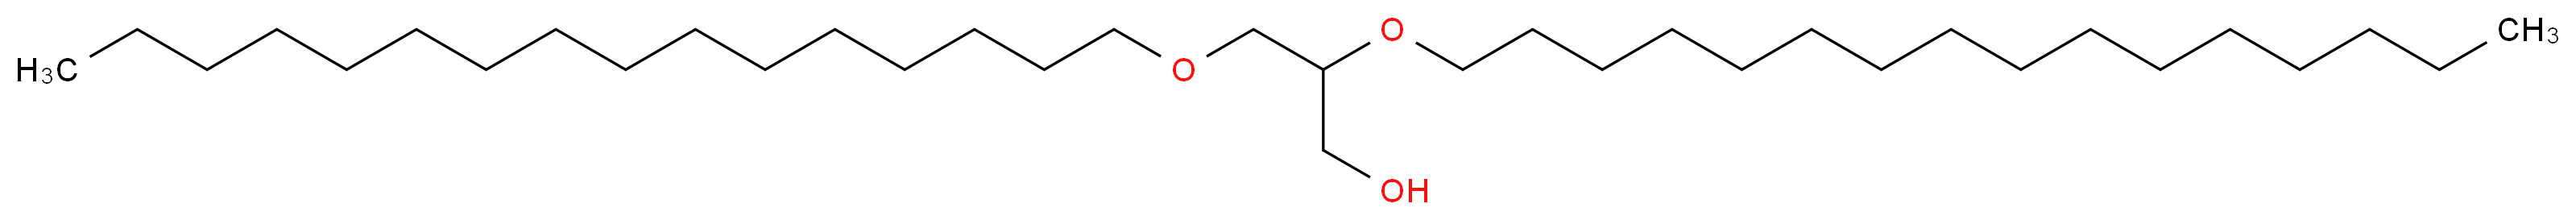 1,2-Di-O-hexadecyl-rac-glycerol_Molecular_structure_CAS_13071-60-8)